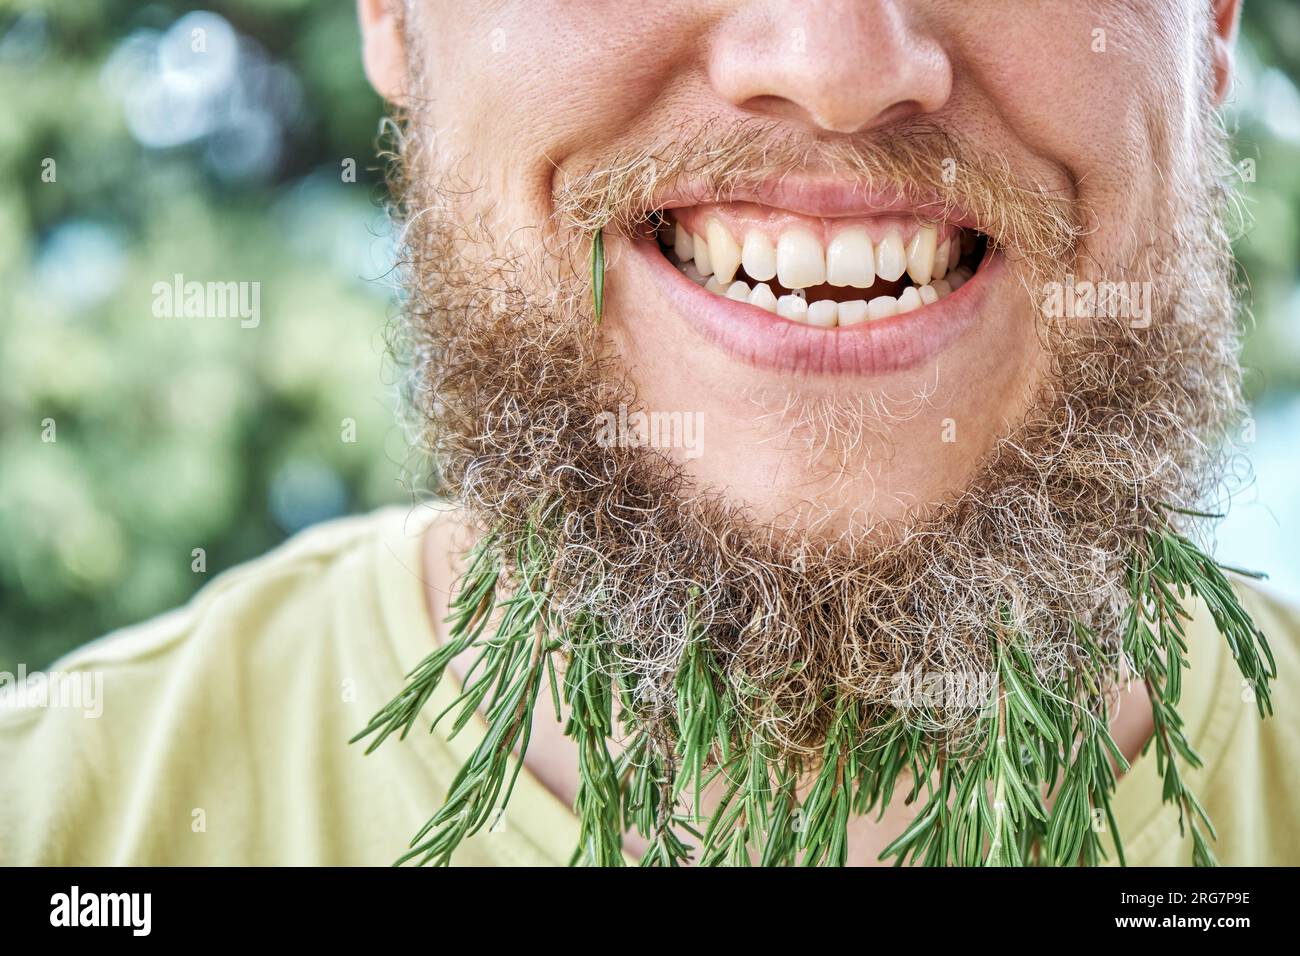 Lächelnder Männerbart und duftender Rosmarin-Zweig. Ein erwachsener, kindischer Mann auf einer sonnigen Wiese mit aufgeregtem Gesichtsausdruck auf Nahaufnahme Stockfoto